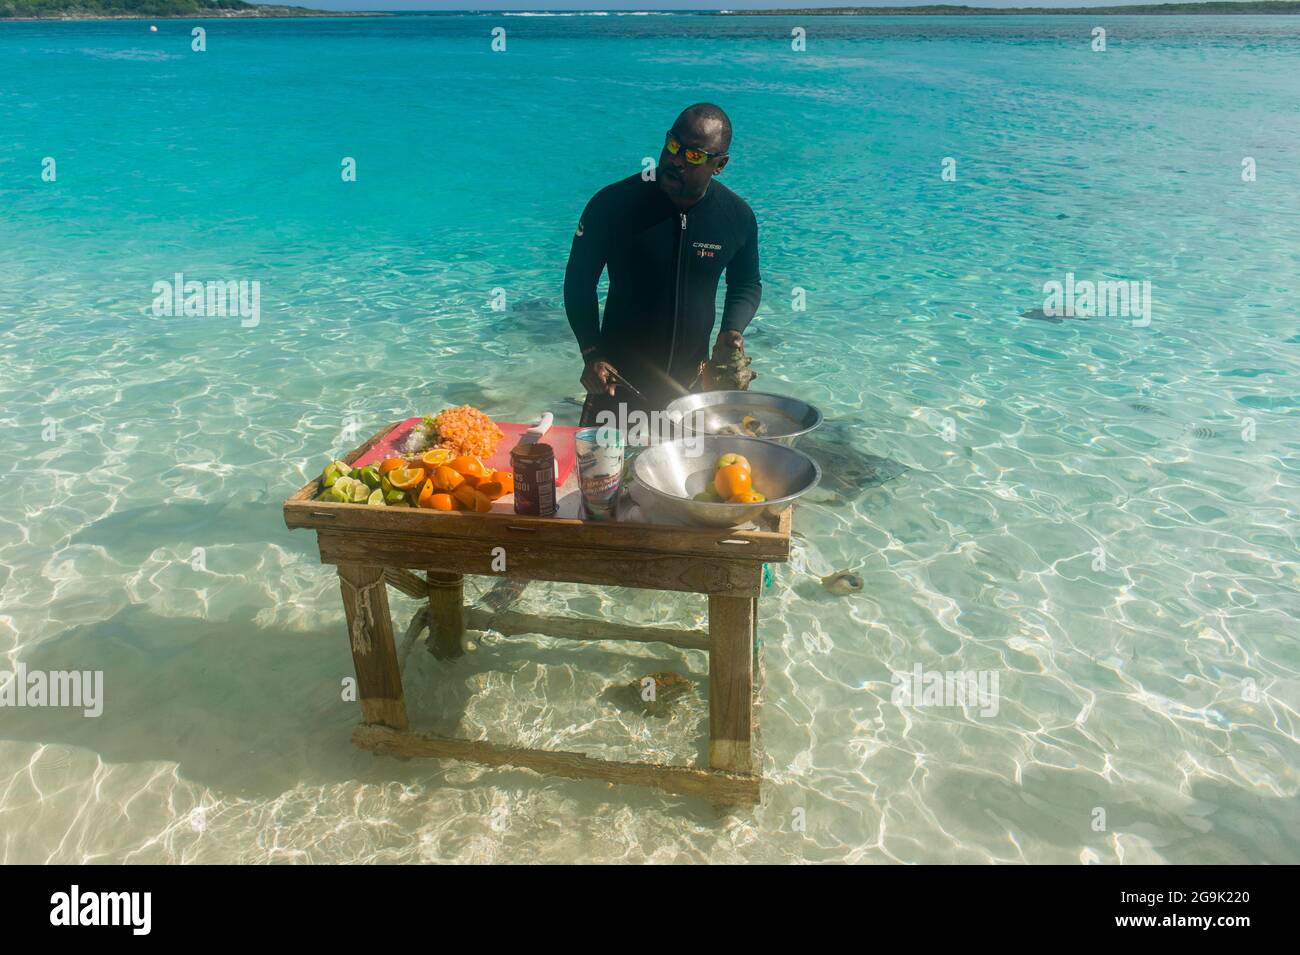 Homme local préparant un conch cockctail tandis qu'un rayon tourbillonne autour de ses pieds, Exumas, Bahamas, Caraïbes Banque D'Images